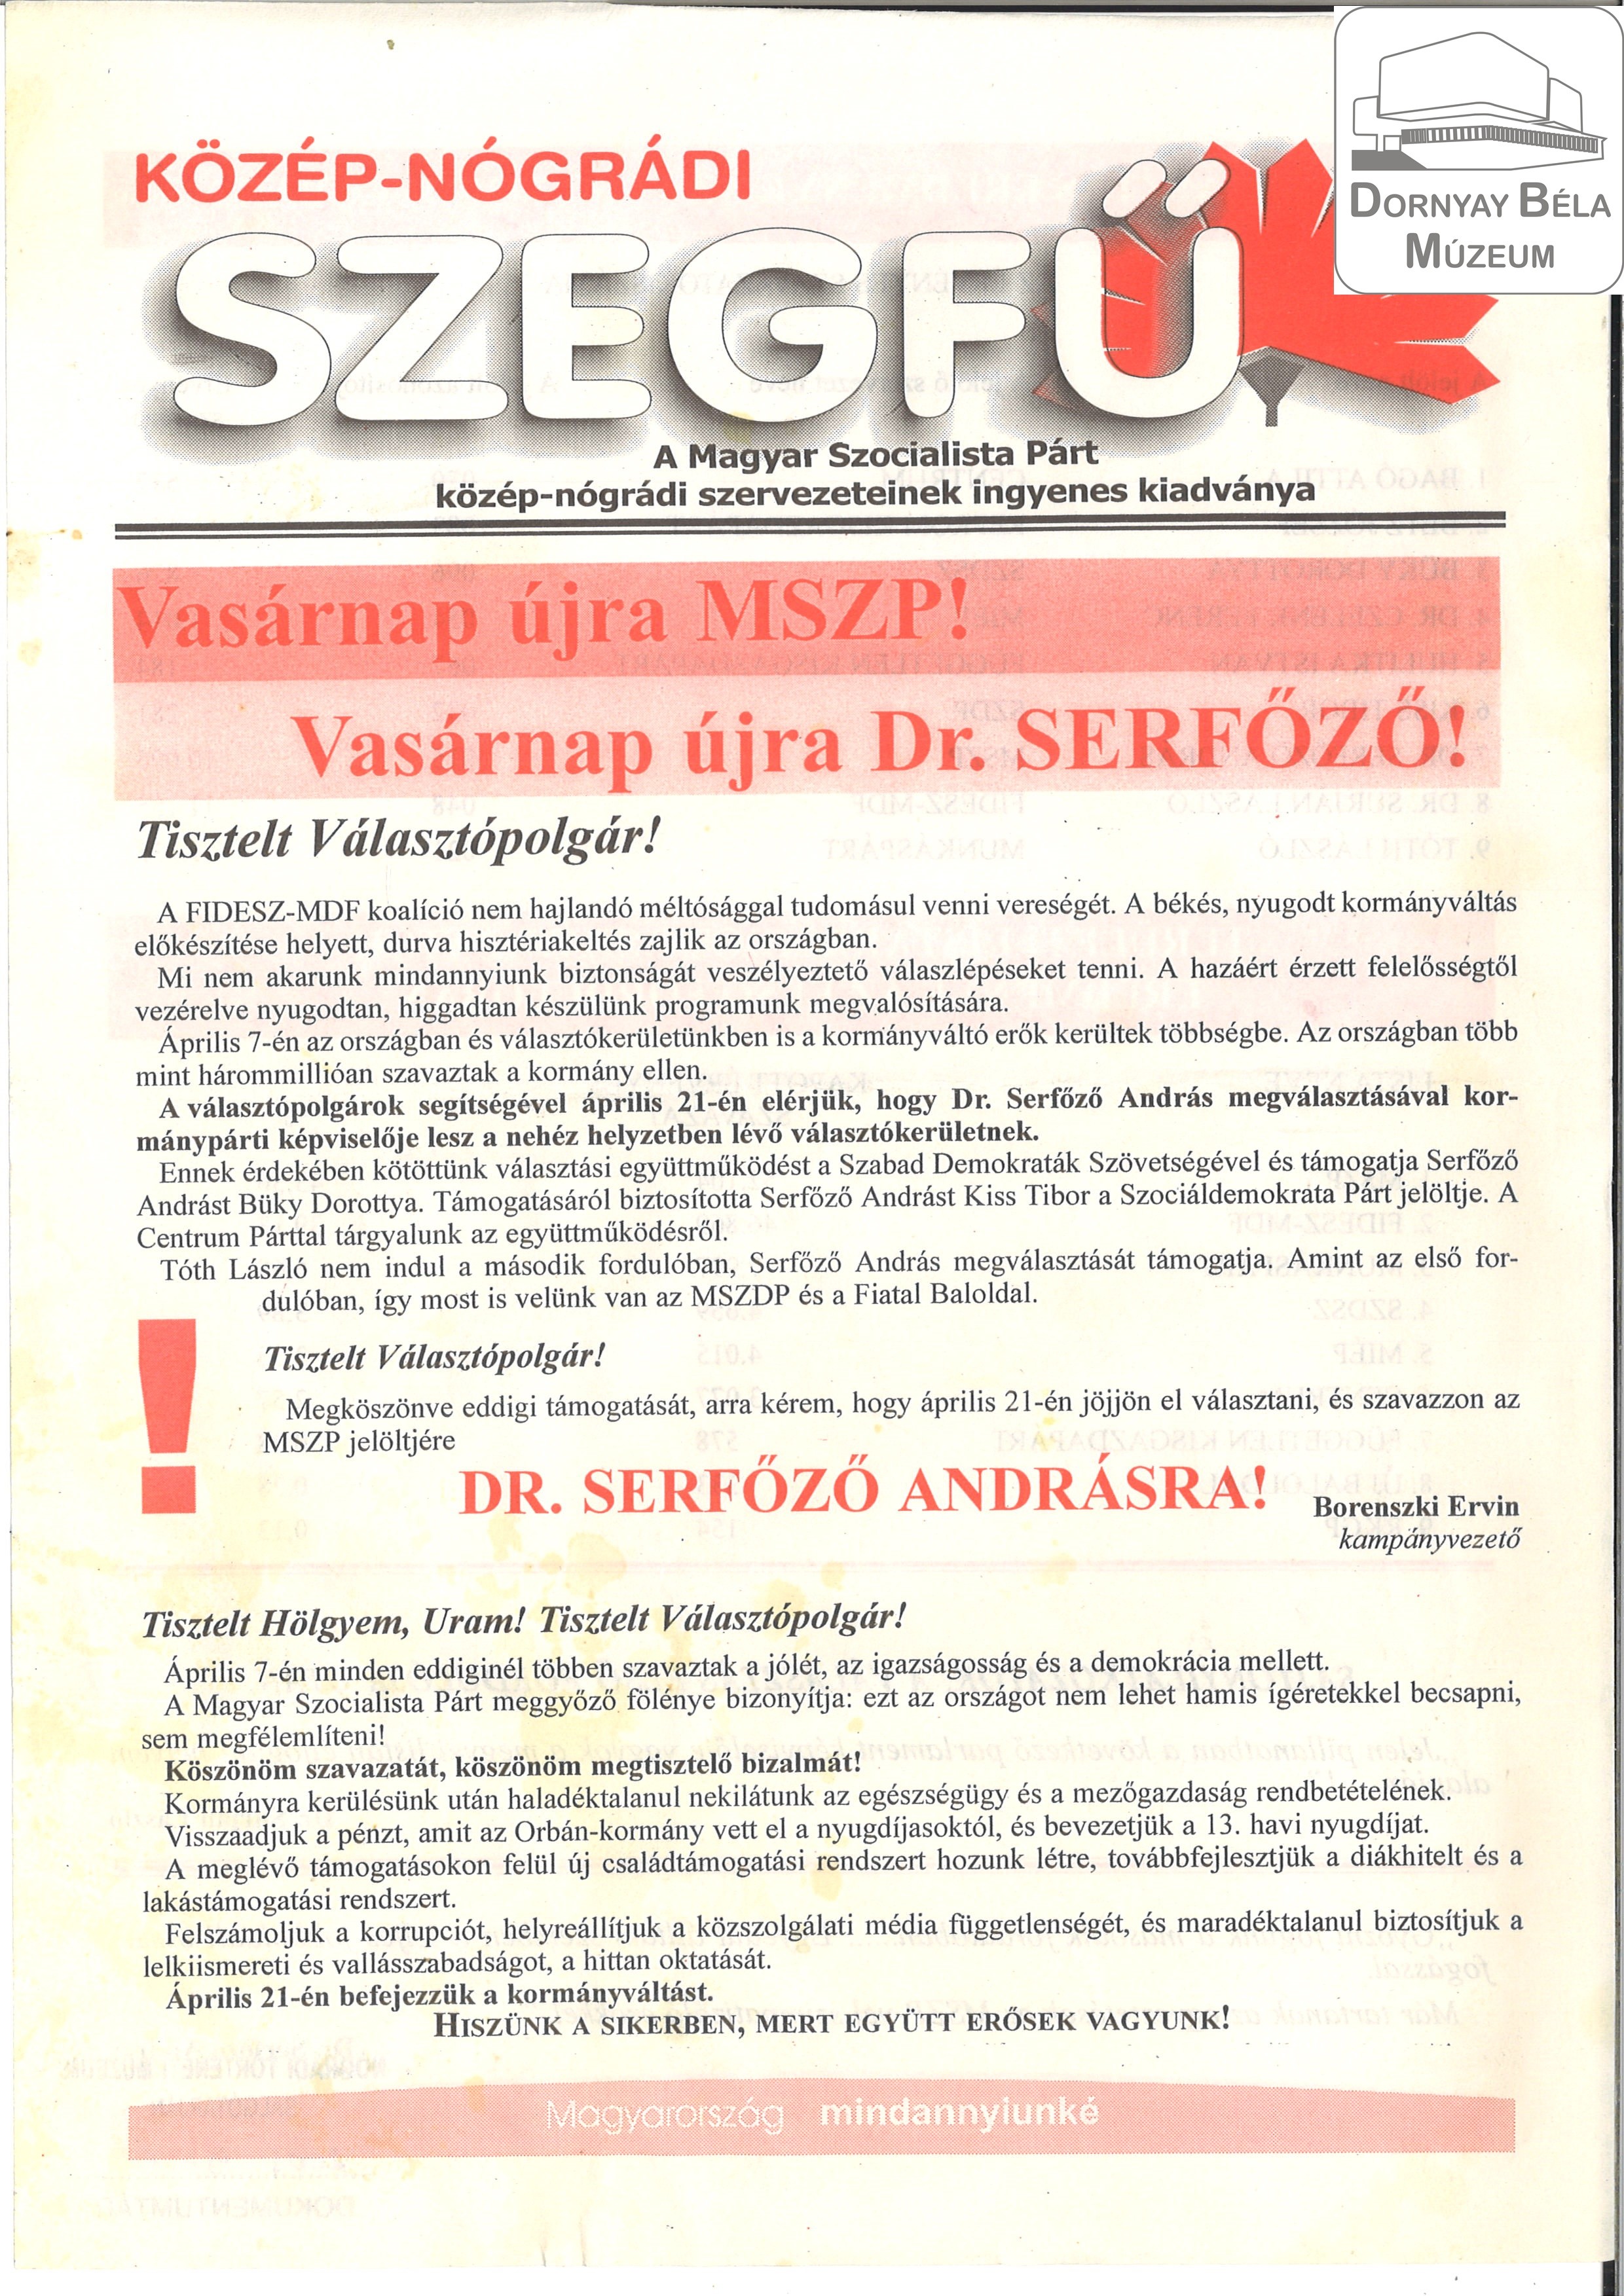 Közép-nógrádi Szekfű. Az MSZP közép-nógrádi szervezeteinek ingyenes kiadványa (Dornyay Béla Múzeum, Salgótarján CC BY-NC-SA)